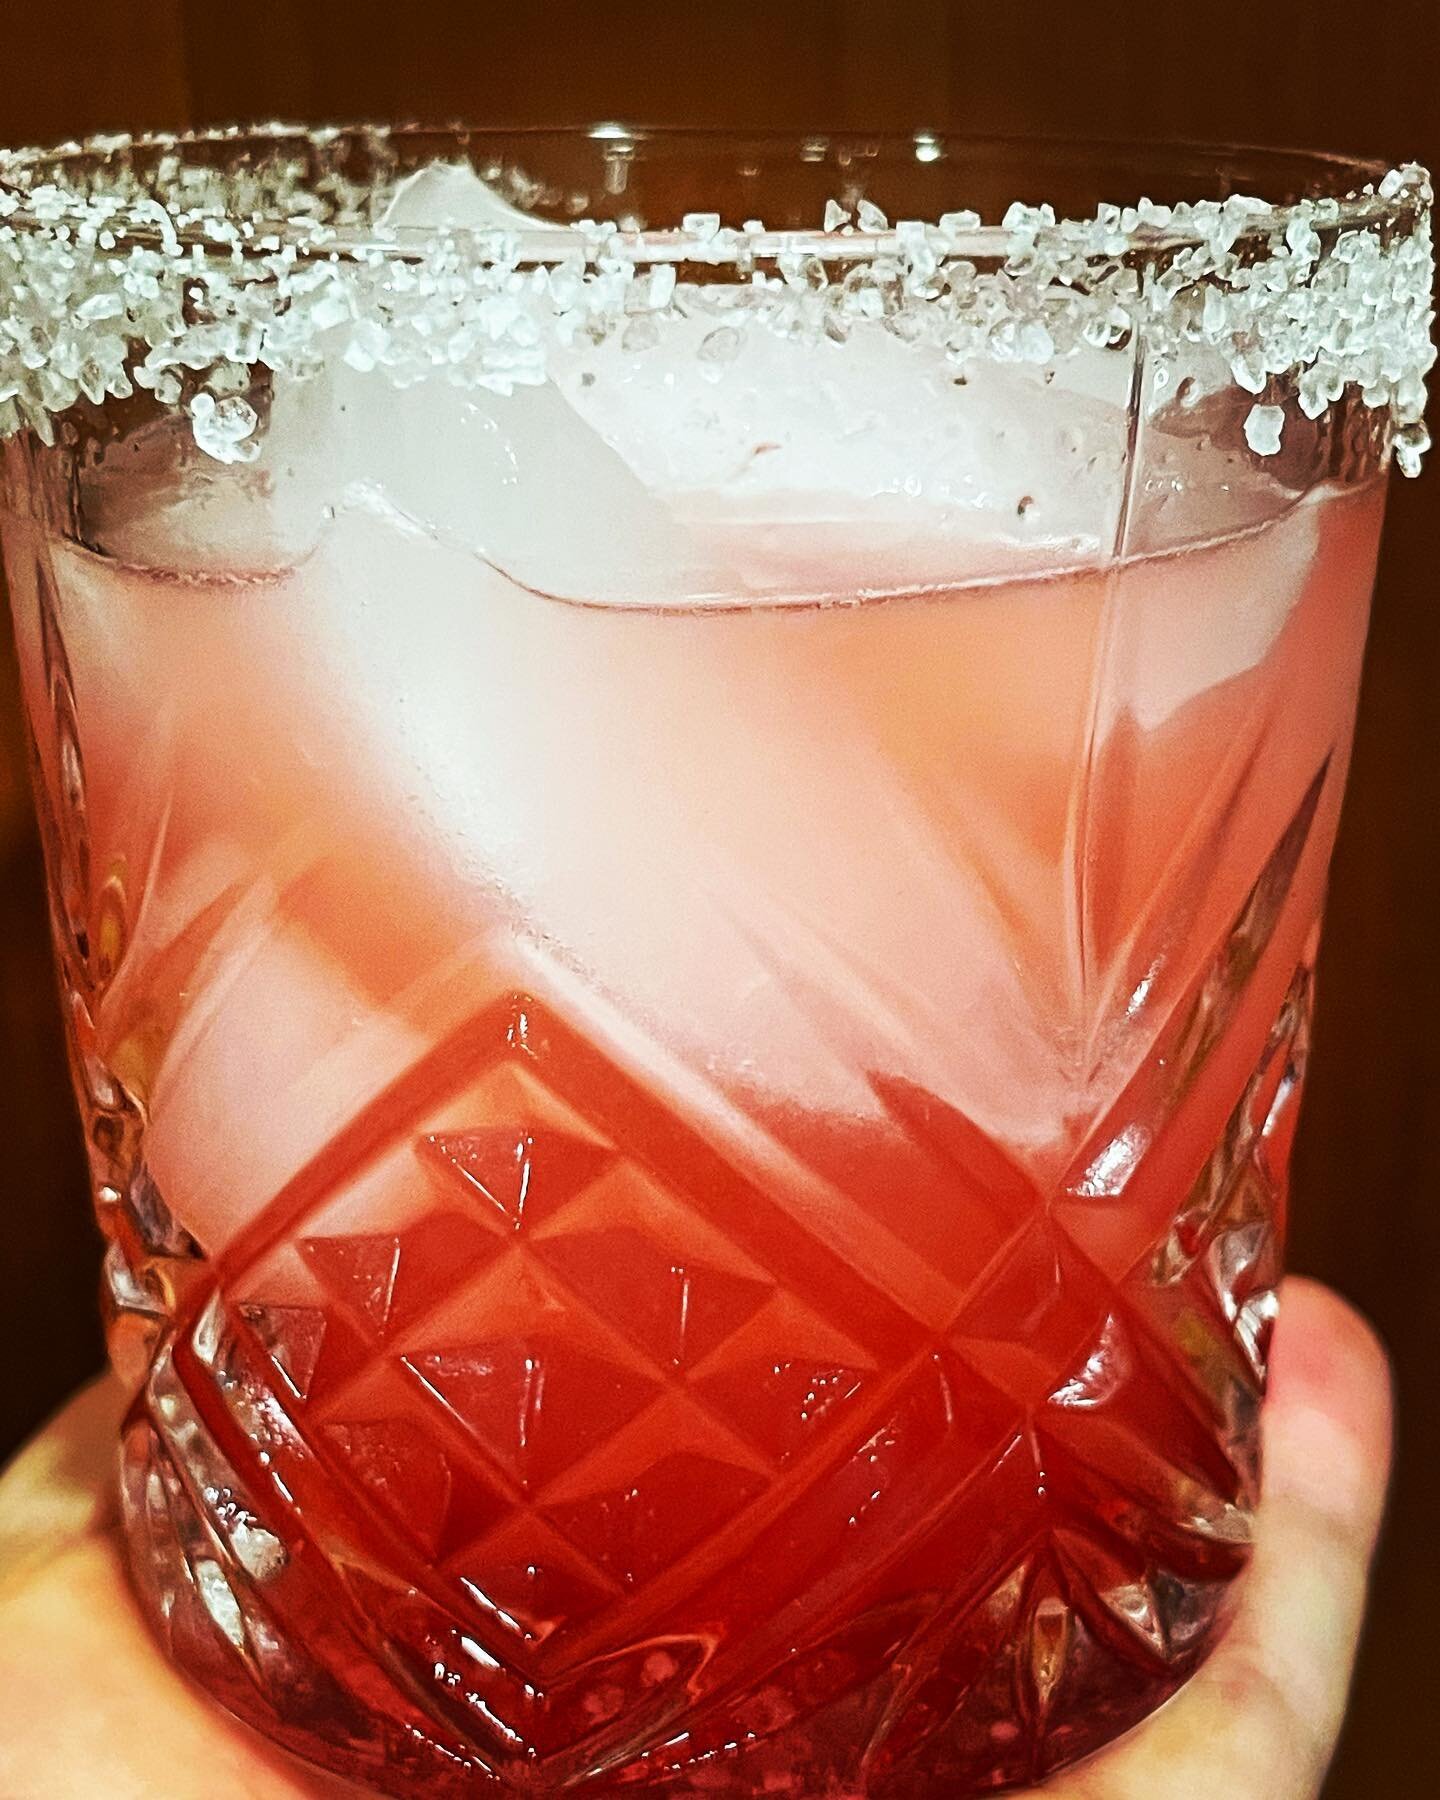 Hibiscus, grapefruit, spicy margarita. #margarita #cocktails #saturday